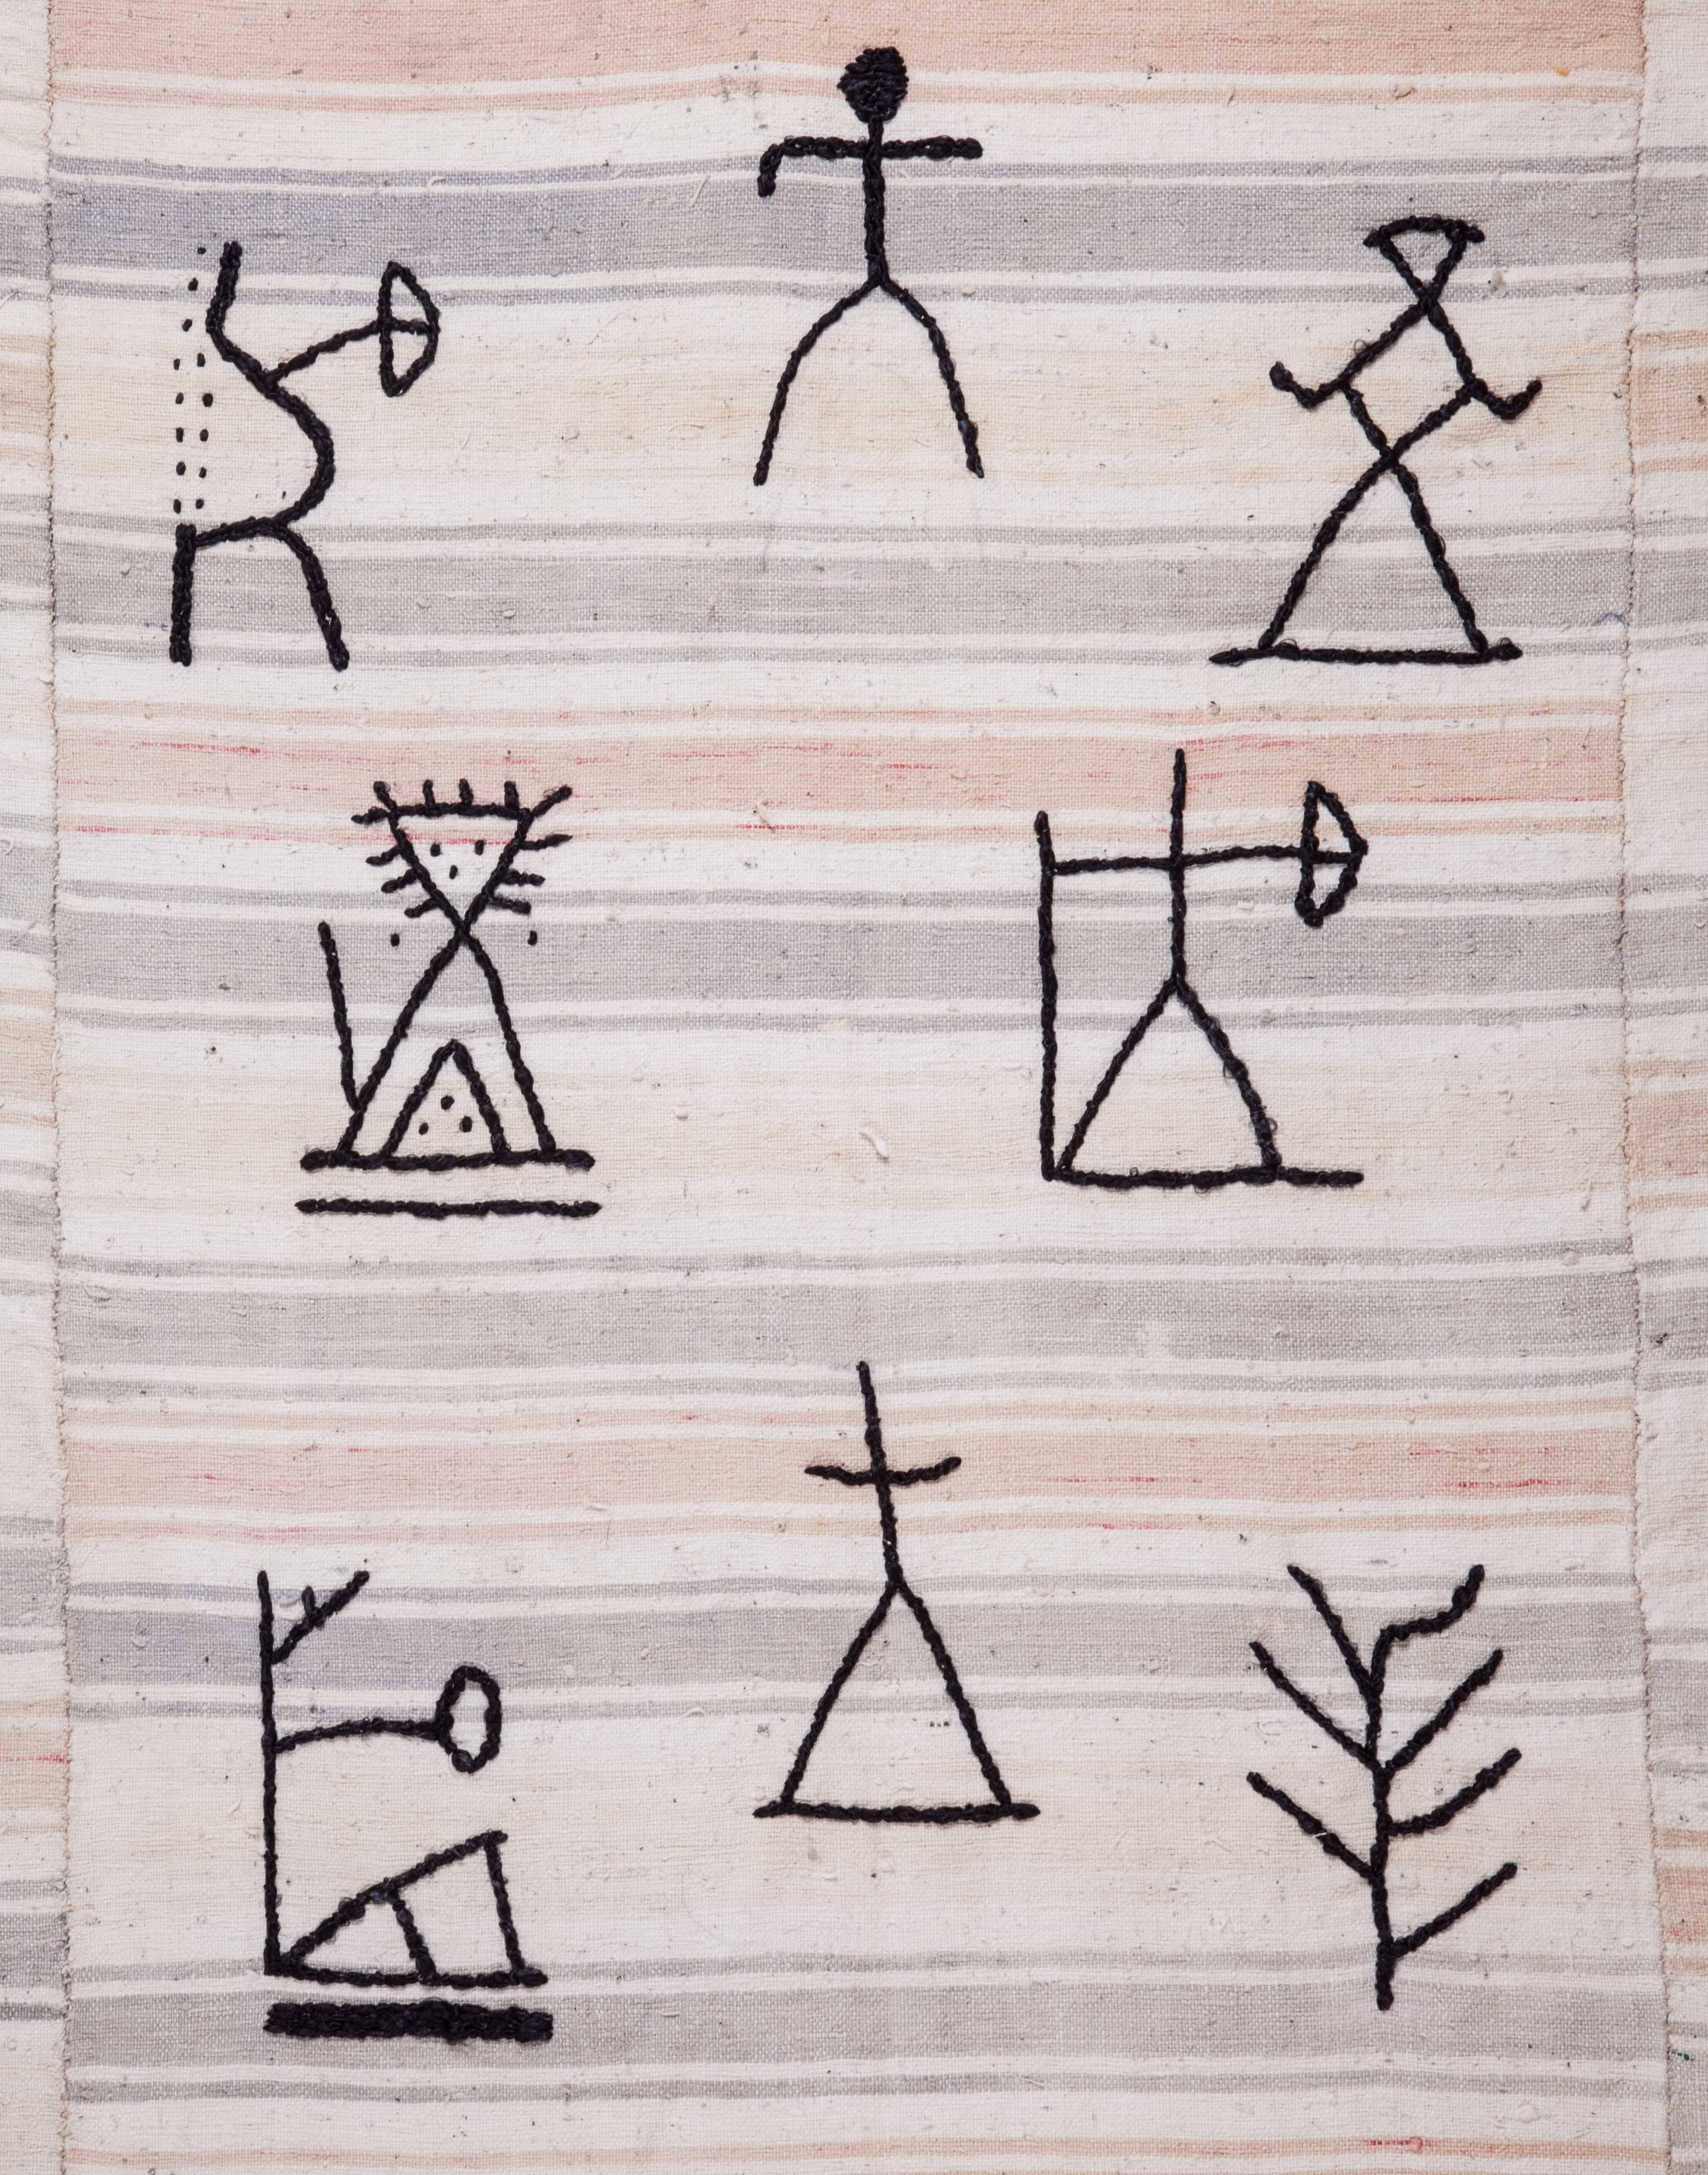 Ich war schon immer von Petroglyphen und Schamanenbildern fasziniert und habe Designelemente von Schamanentrommeln und Felsritzungen gesammelt. Ich habe eine Gruppe von Stickerinnen zusammengetrommelt und die Entwürfe auf schwarze Seide gestickt,